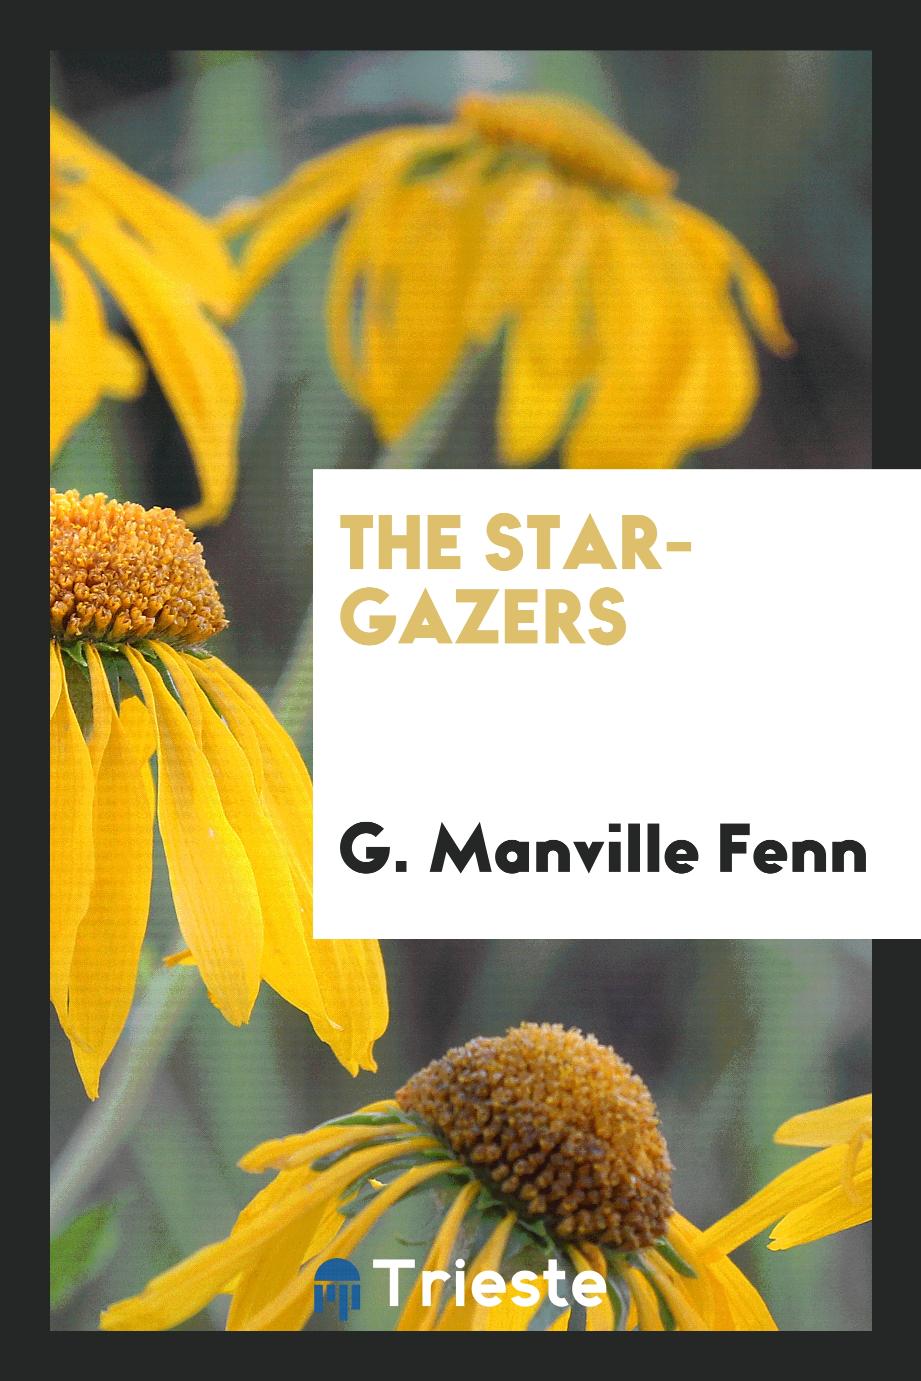 The star-gazers